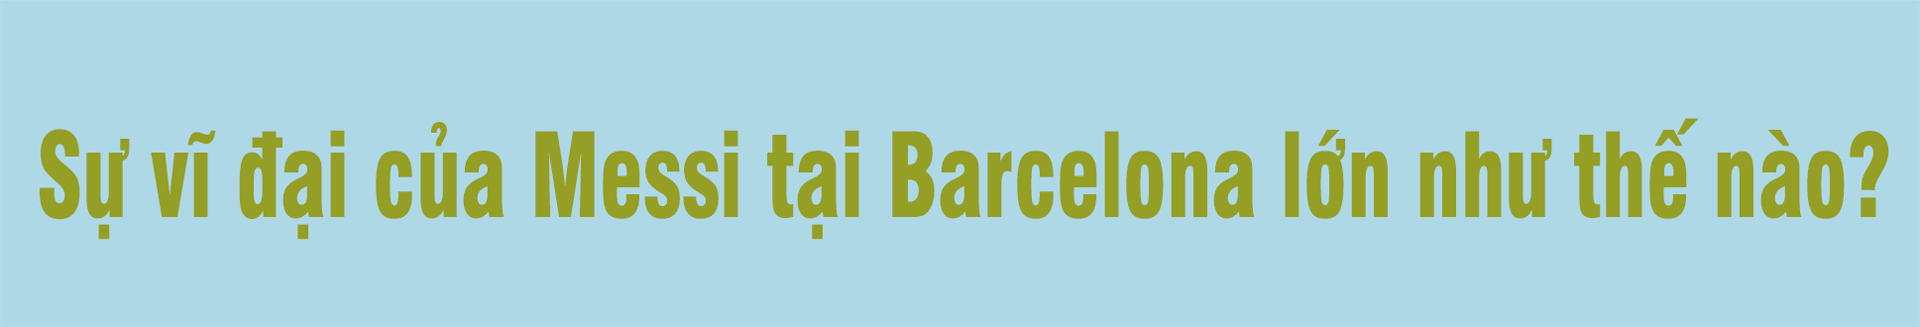 Messi rời Barcelona: Sự sụp đổ của một triều đại và miền đất mới ngập tiền - 5